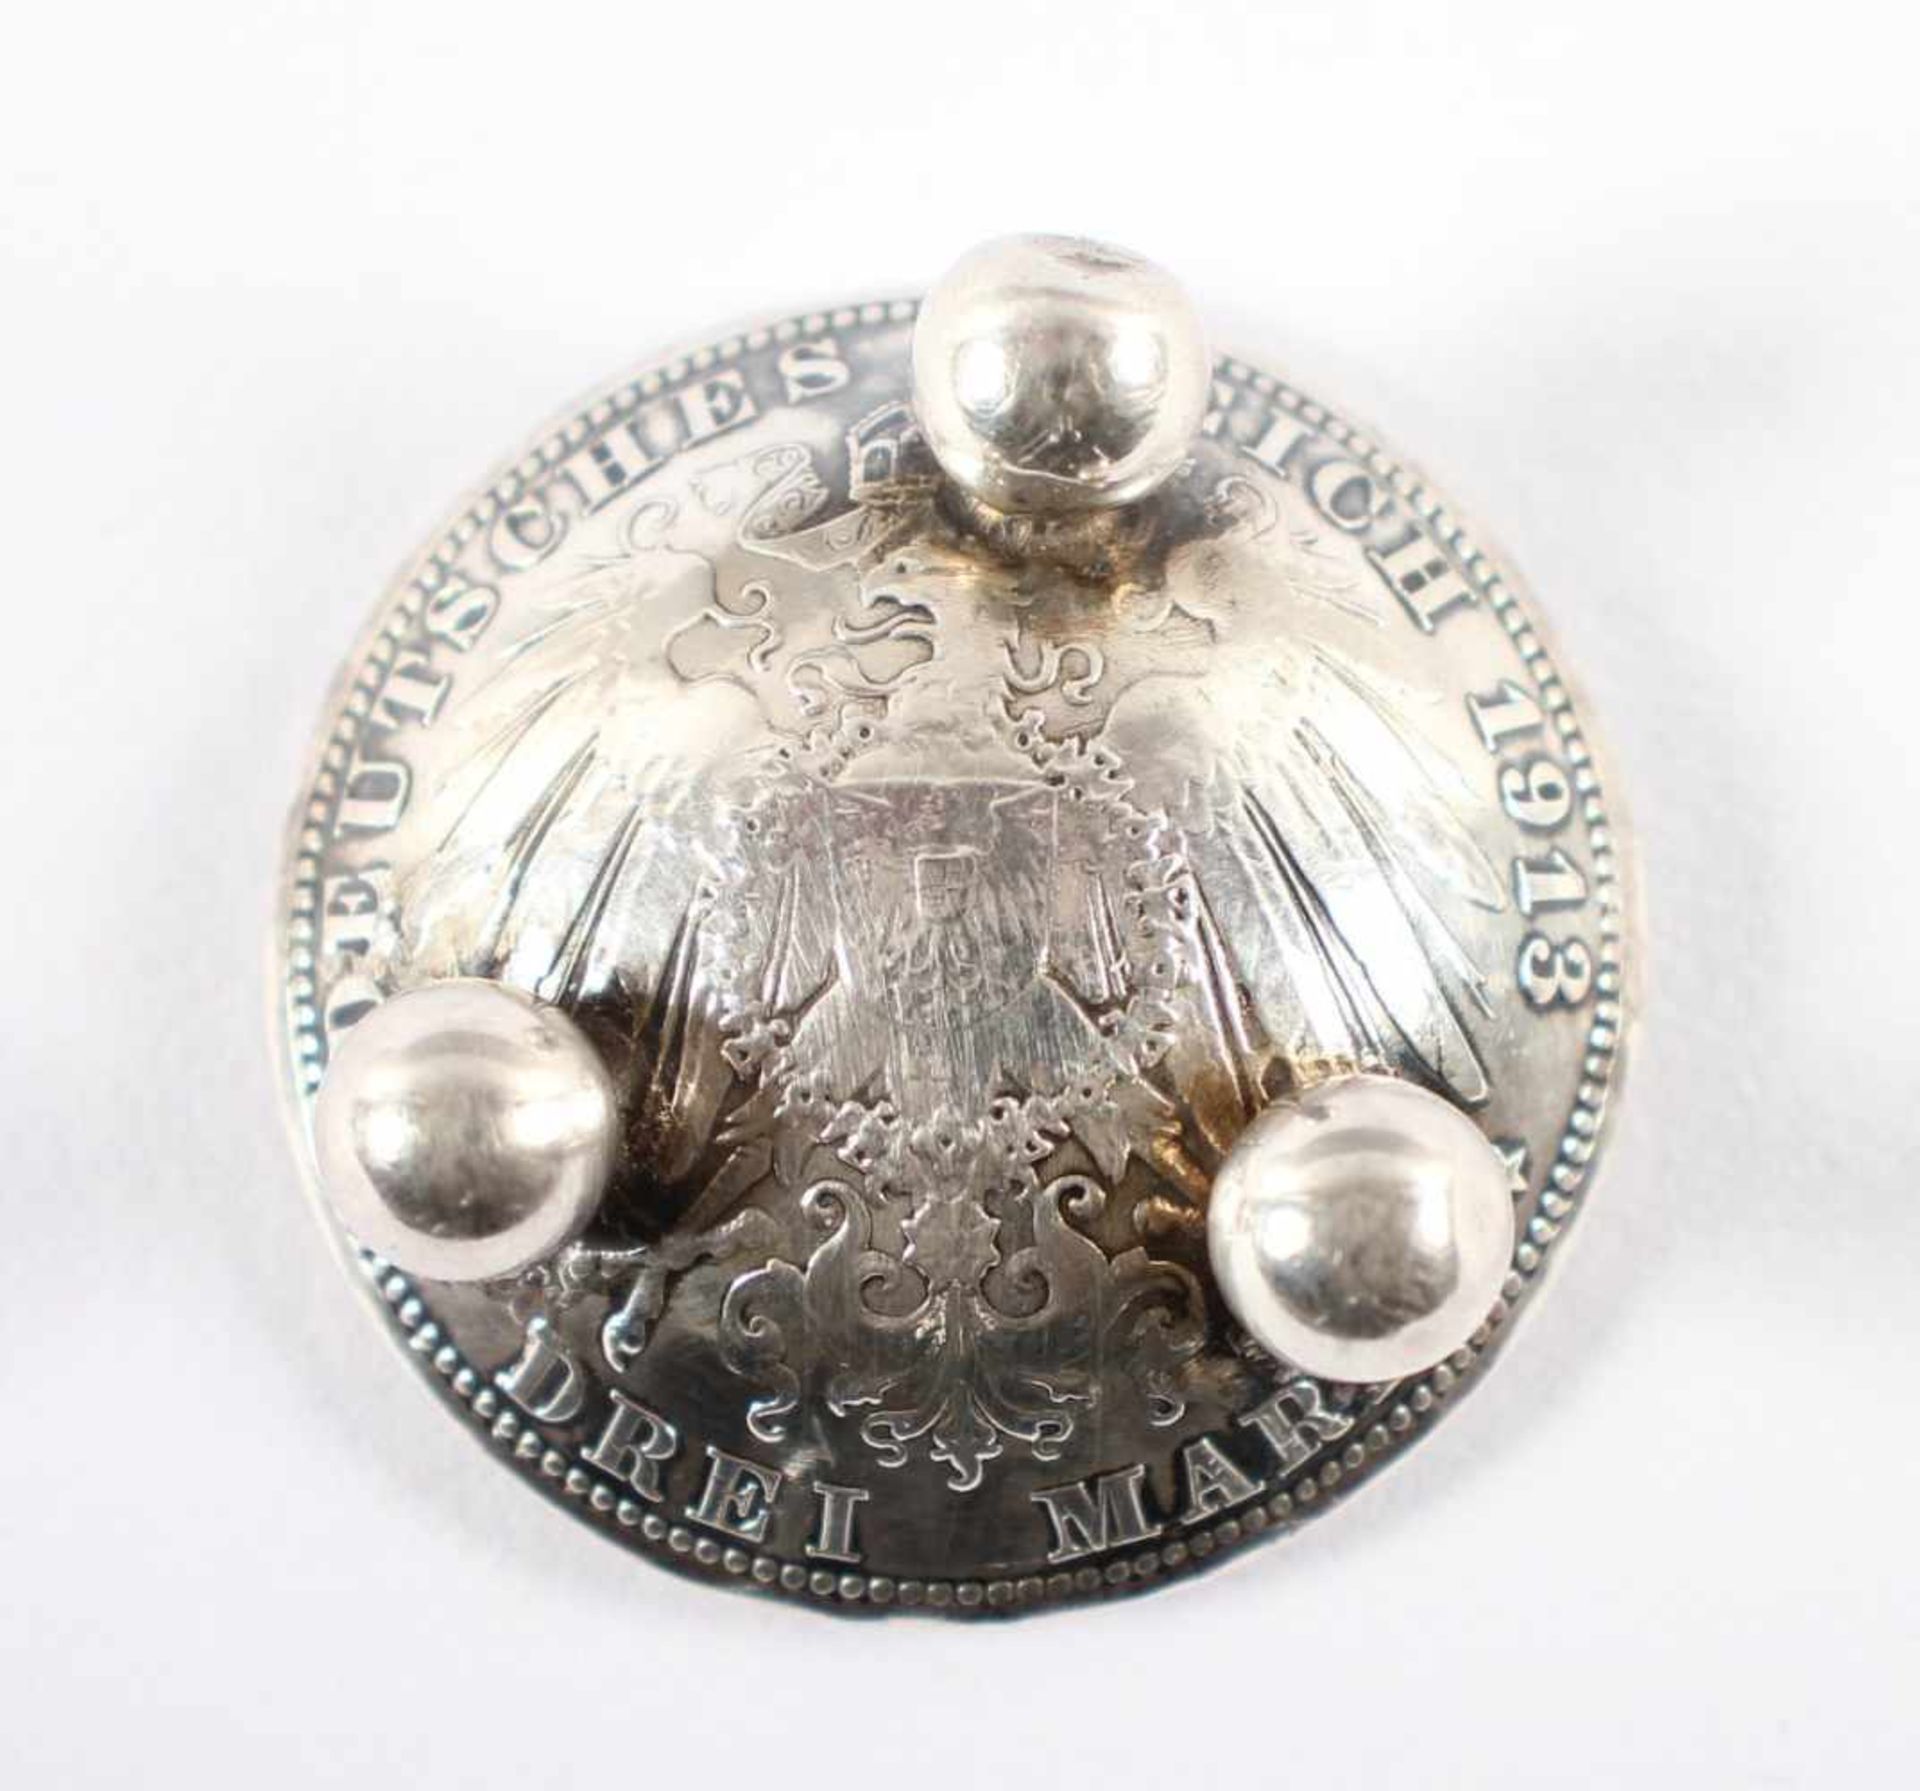 MÜNZ-SALIERE, 900/ooo, gedrückte preussische 3-Mark-Münze von 1913 auf drei Kugelfüßen, Dm 3, 17g, - Bild 2 aus 2